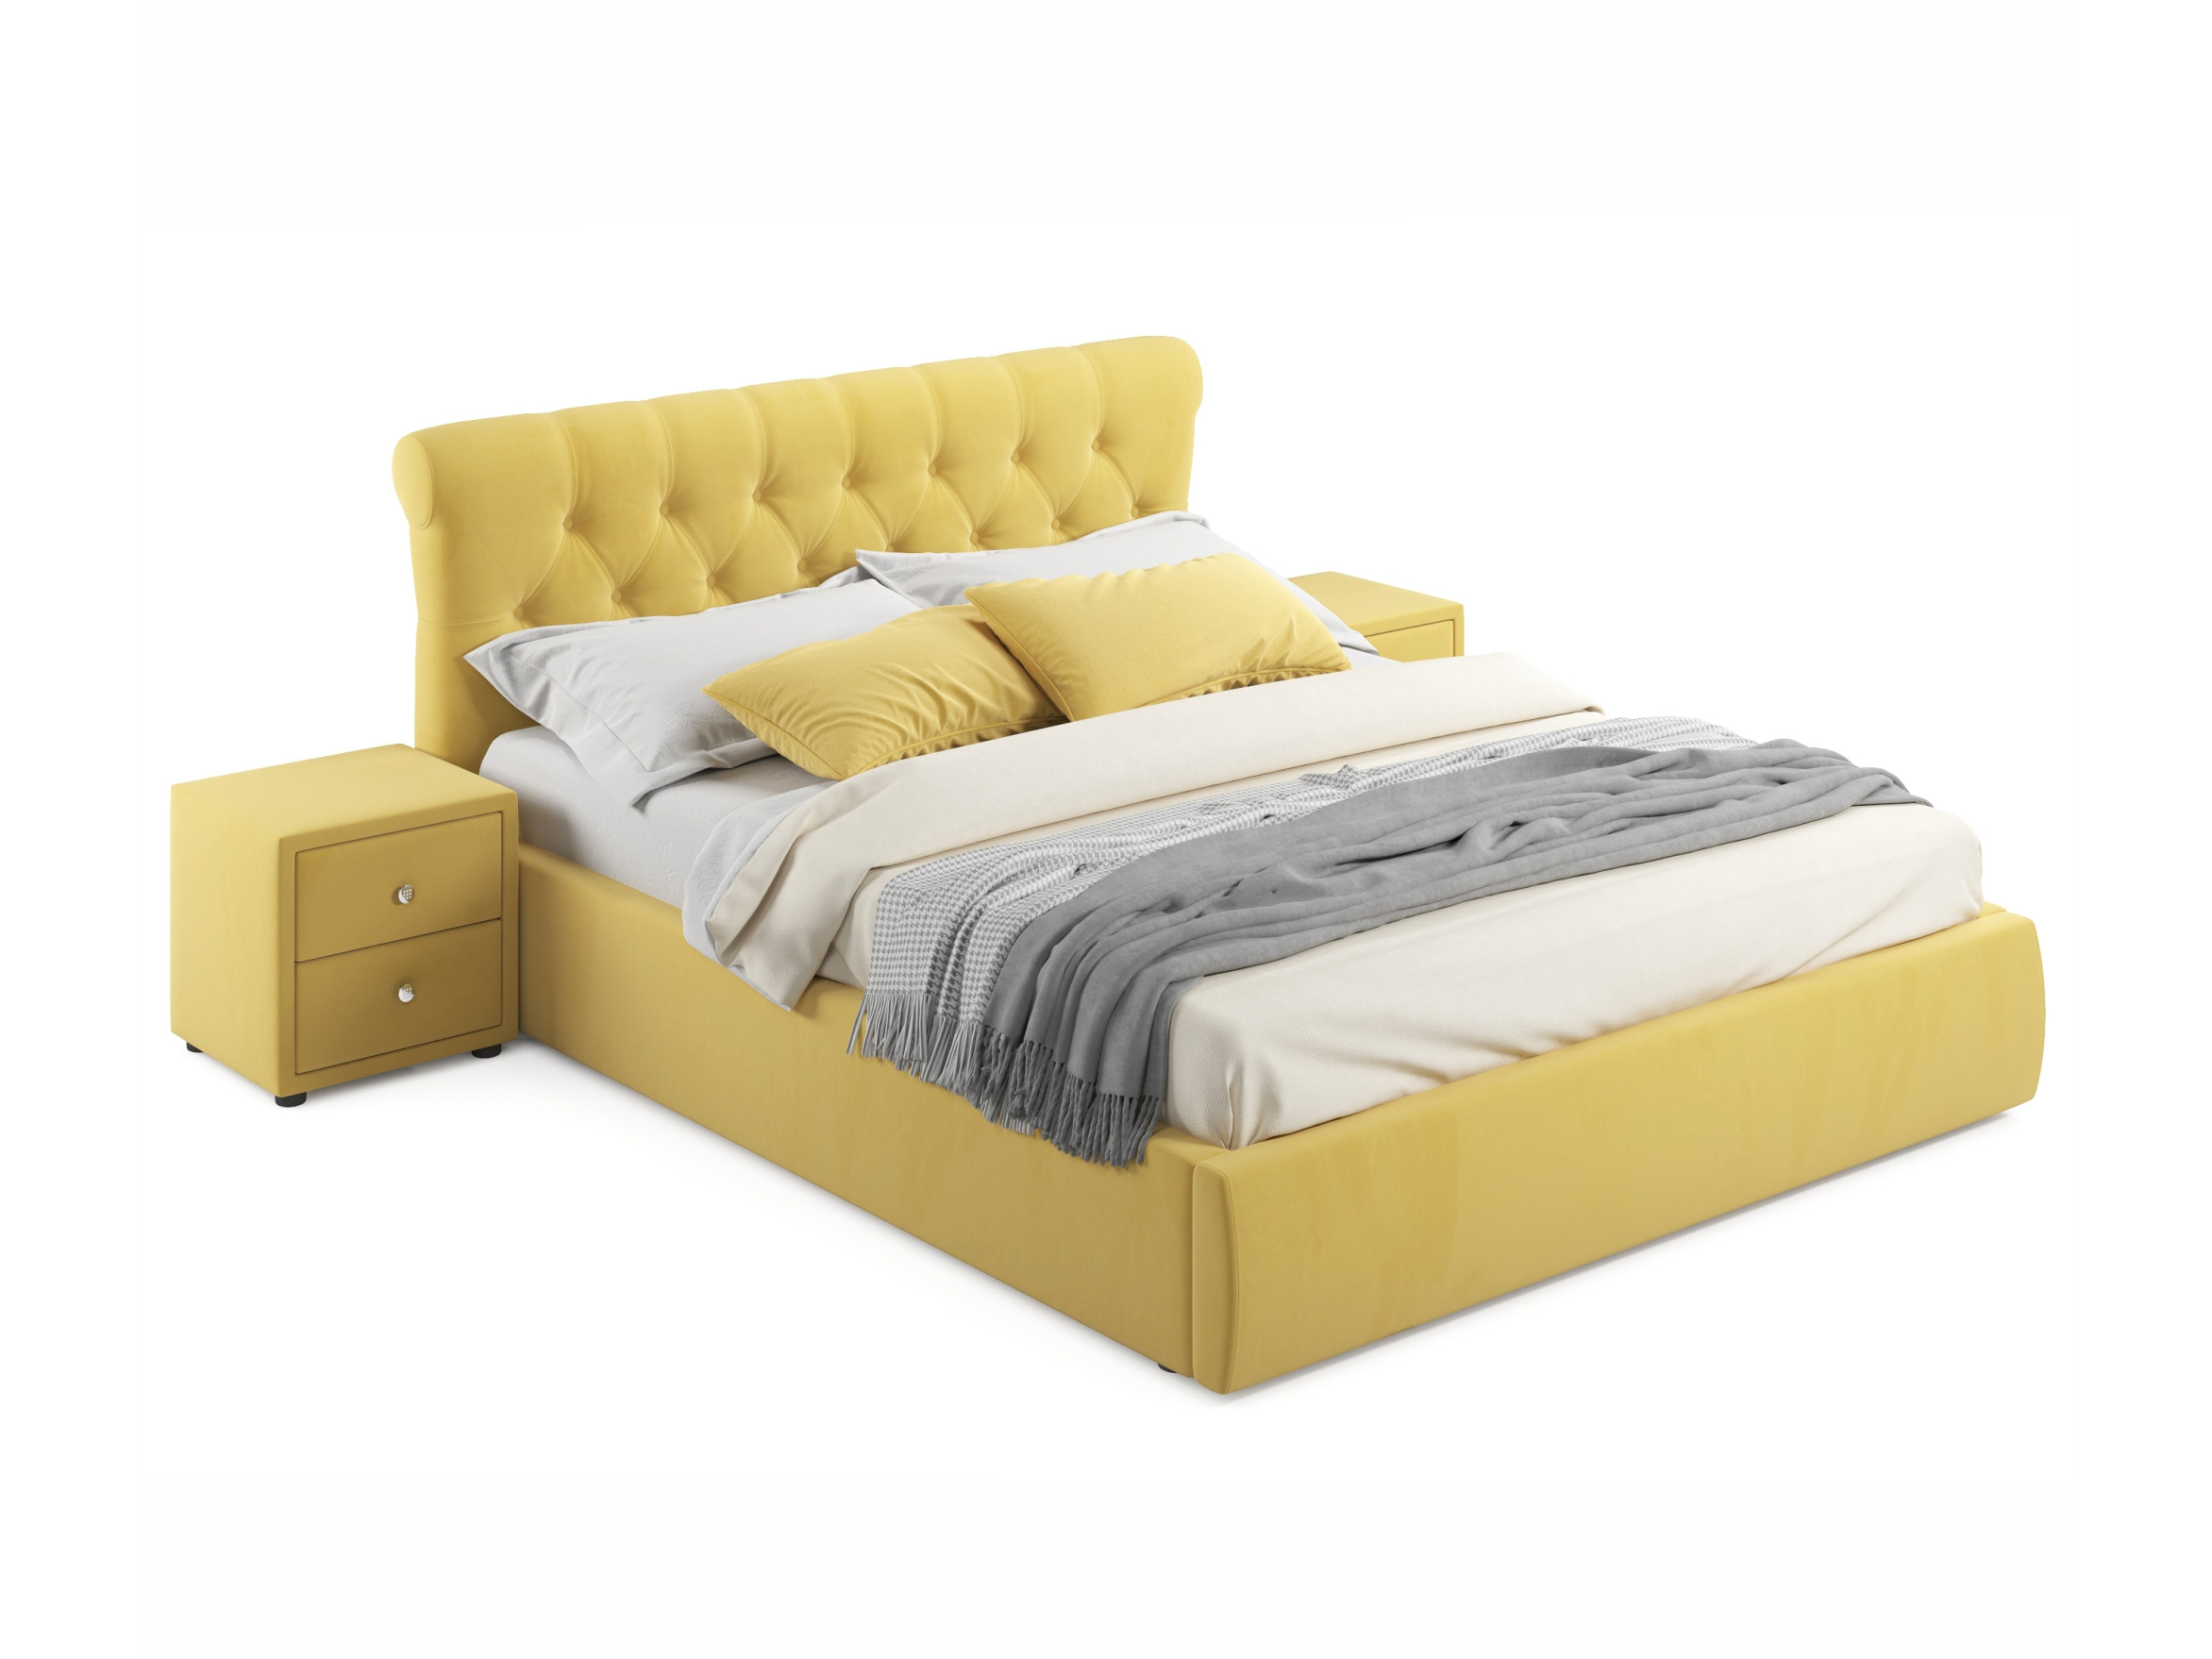 Мягкая кровать с тумбами Ameli 1600 желтая с подъемным механизмом желтый, Желтый, Велюр, ДСП мягкая кровать ameli 1400 желтая с подъемным механизмом желтый желтый велюр дсп